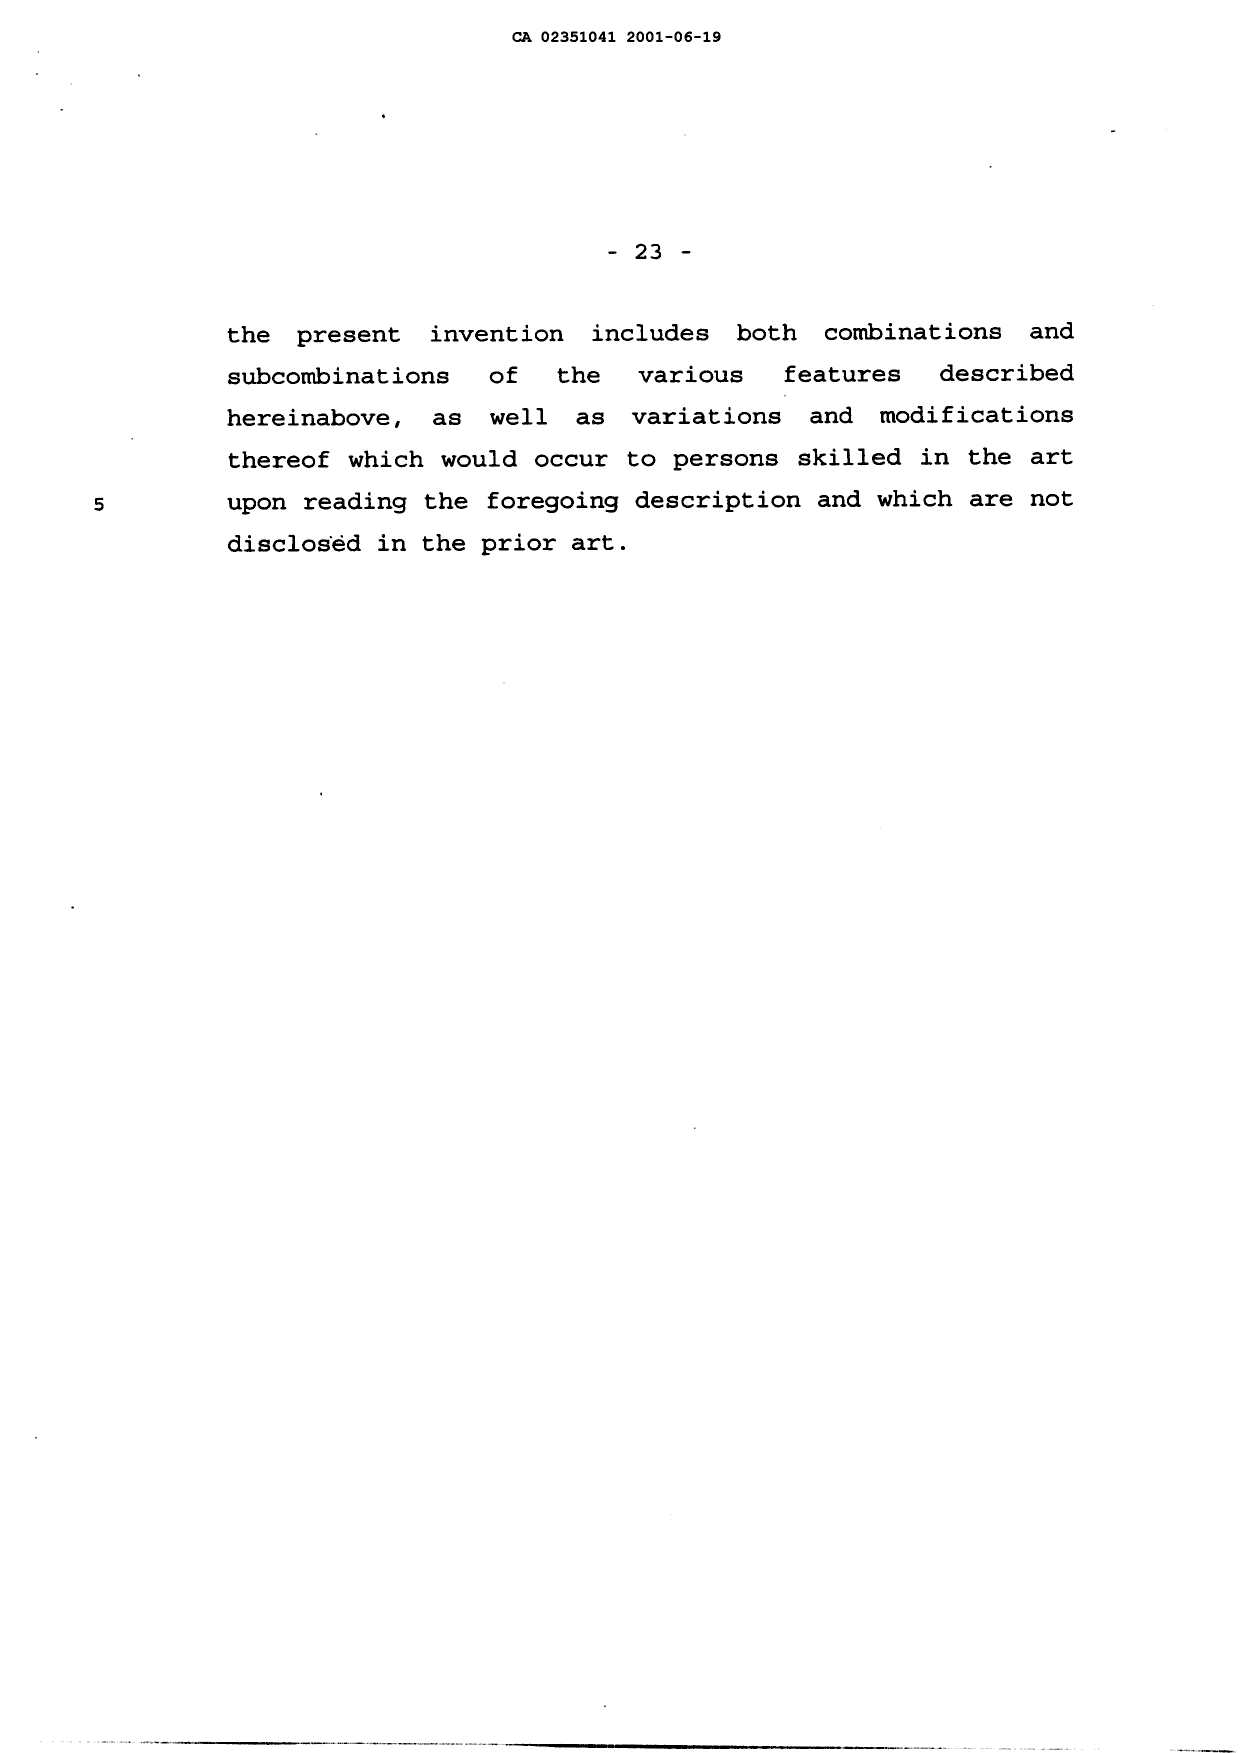 Canadian Patent Document 2351041. Description 20010619. Image 23 of 23